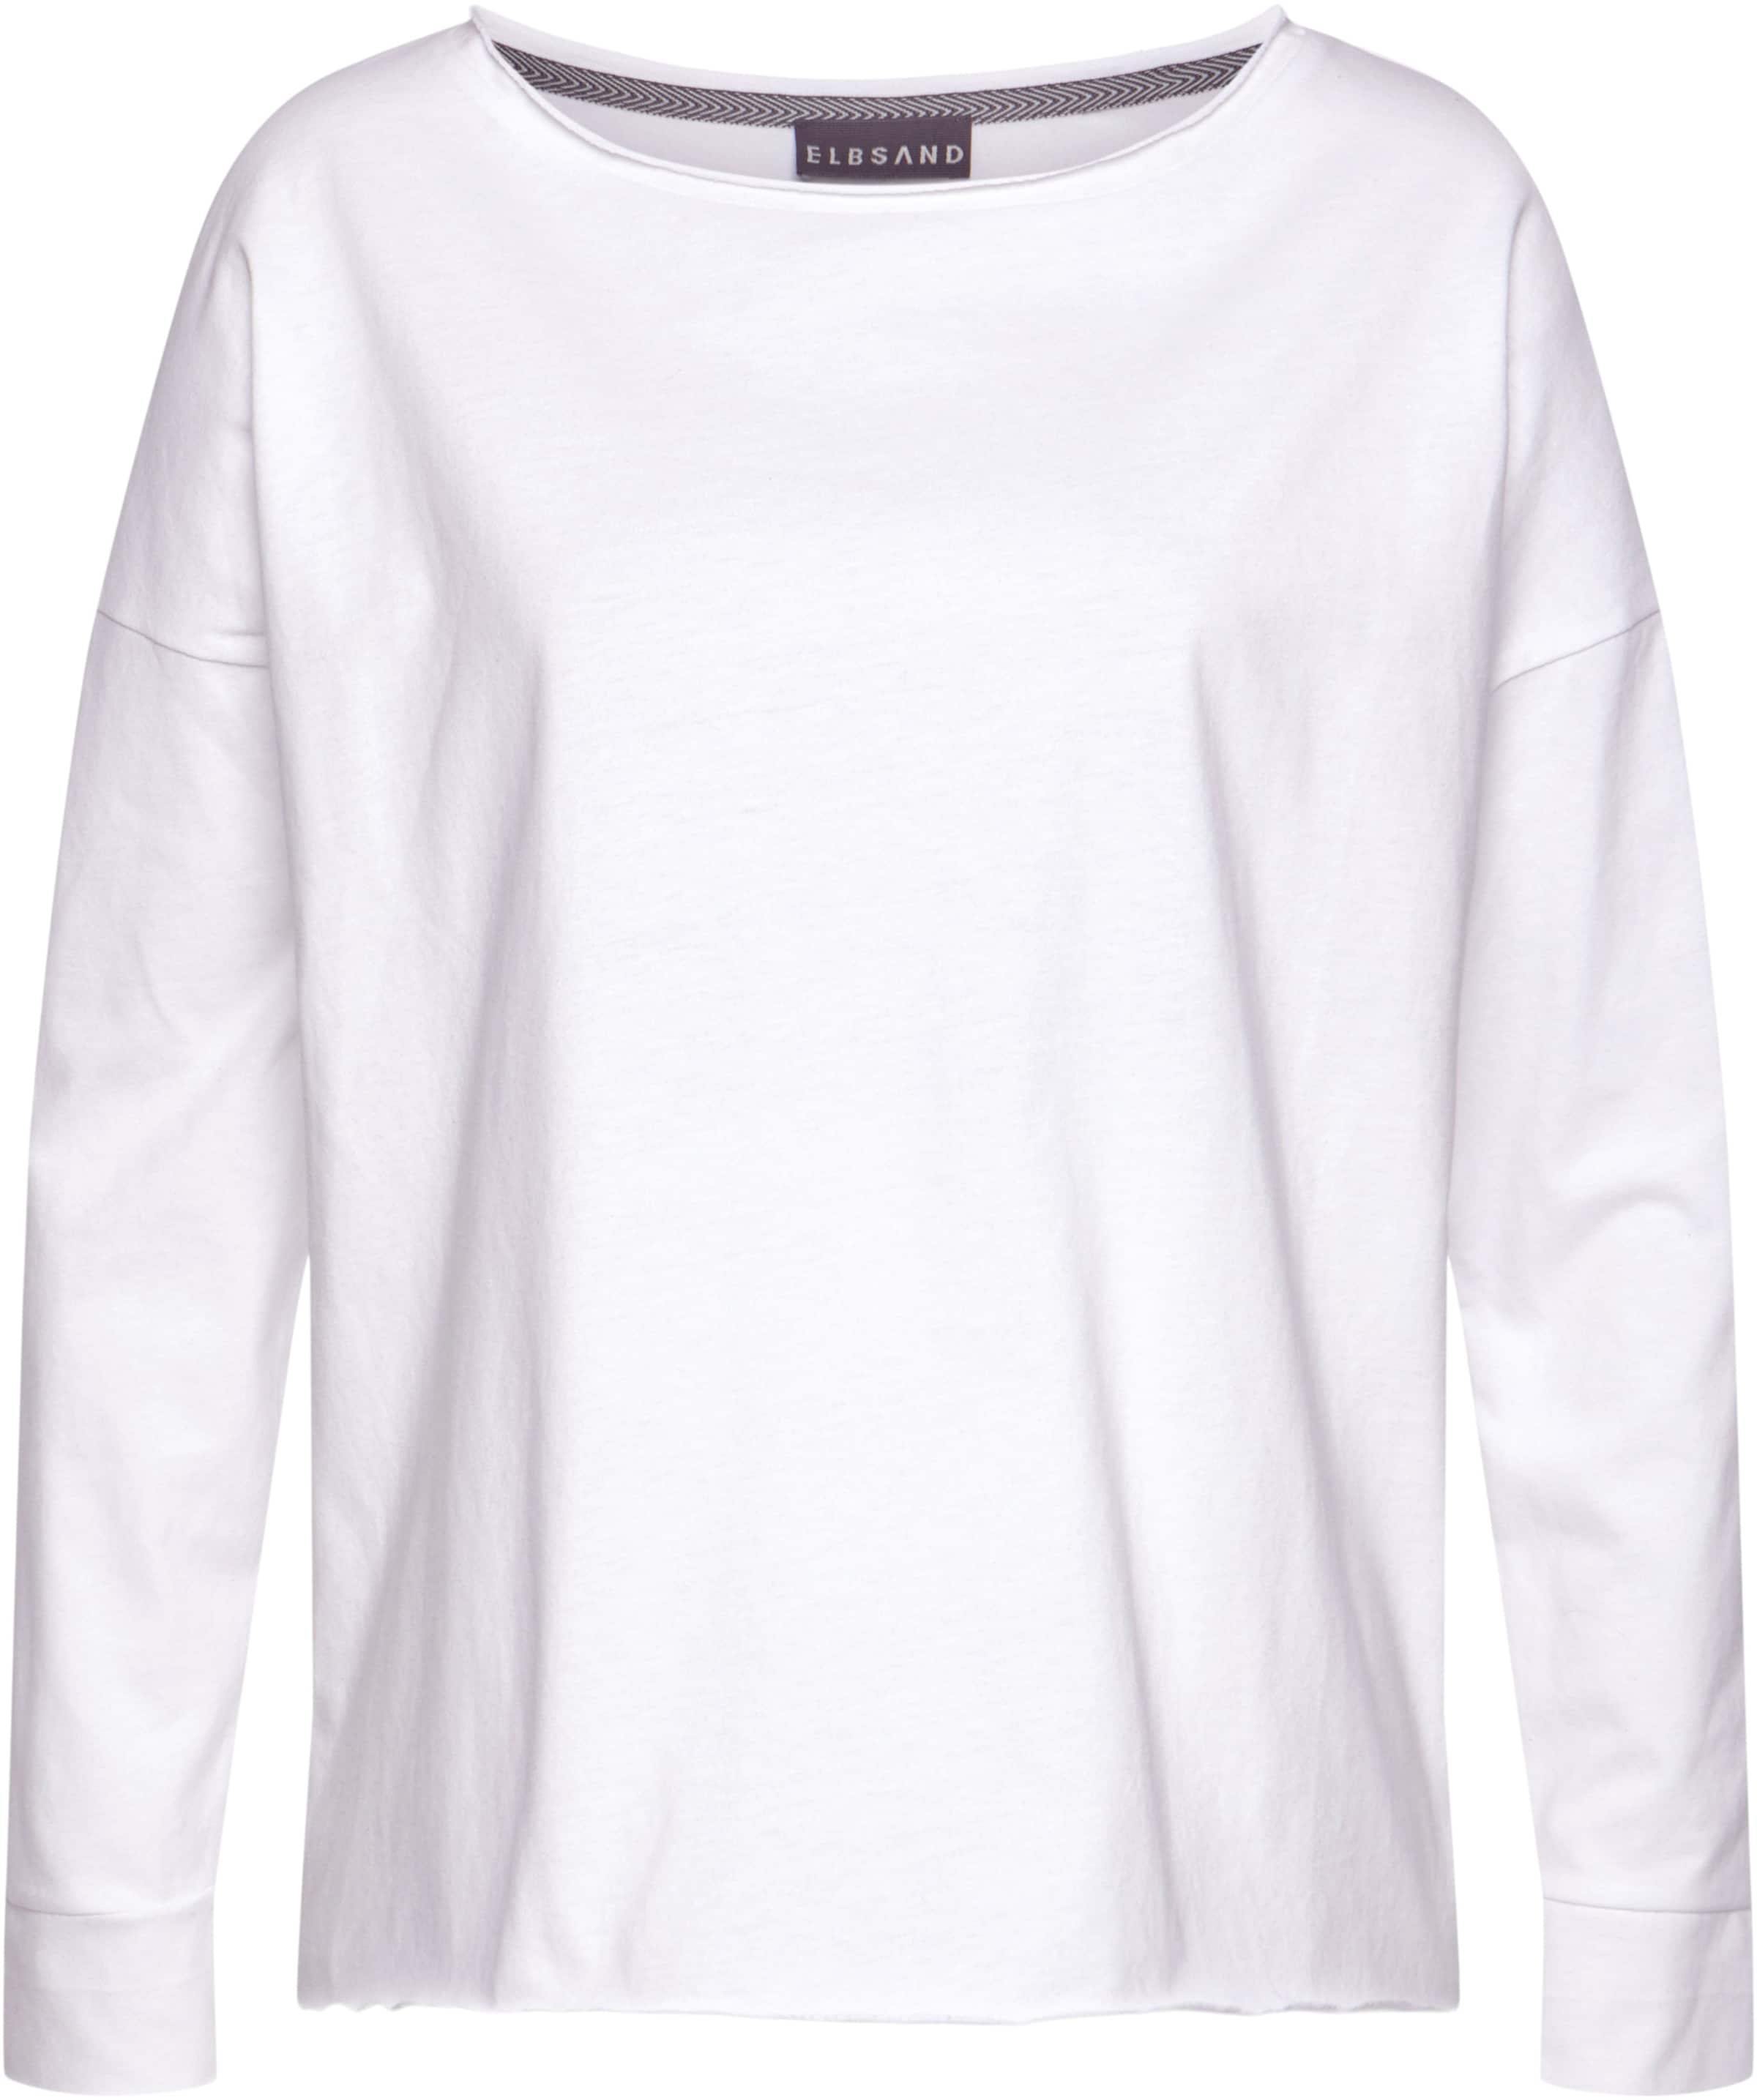 Teilung und günstig Kaufen-Langarmshirt in weiß von Elbsand. Langarmshirt in weiß von Elbsand <![CDATA[Shirt von ELBSAND mit großem Logoprint und Teilungsnaht auf dem Rücken. Überschnittene Schultern und lange Ärmel. Länge ca. 62 cm. Aus 50% Baumwolle, 50% Polyester.